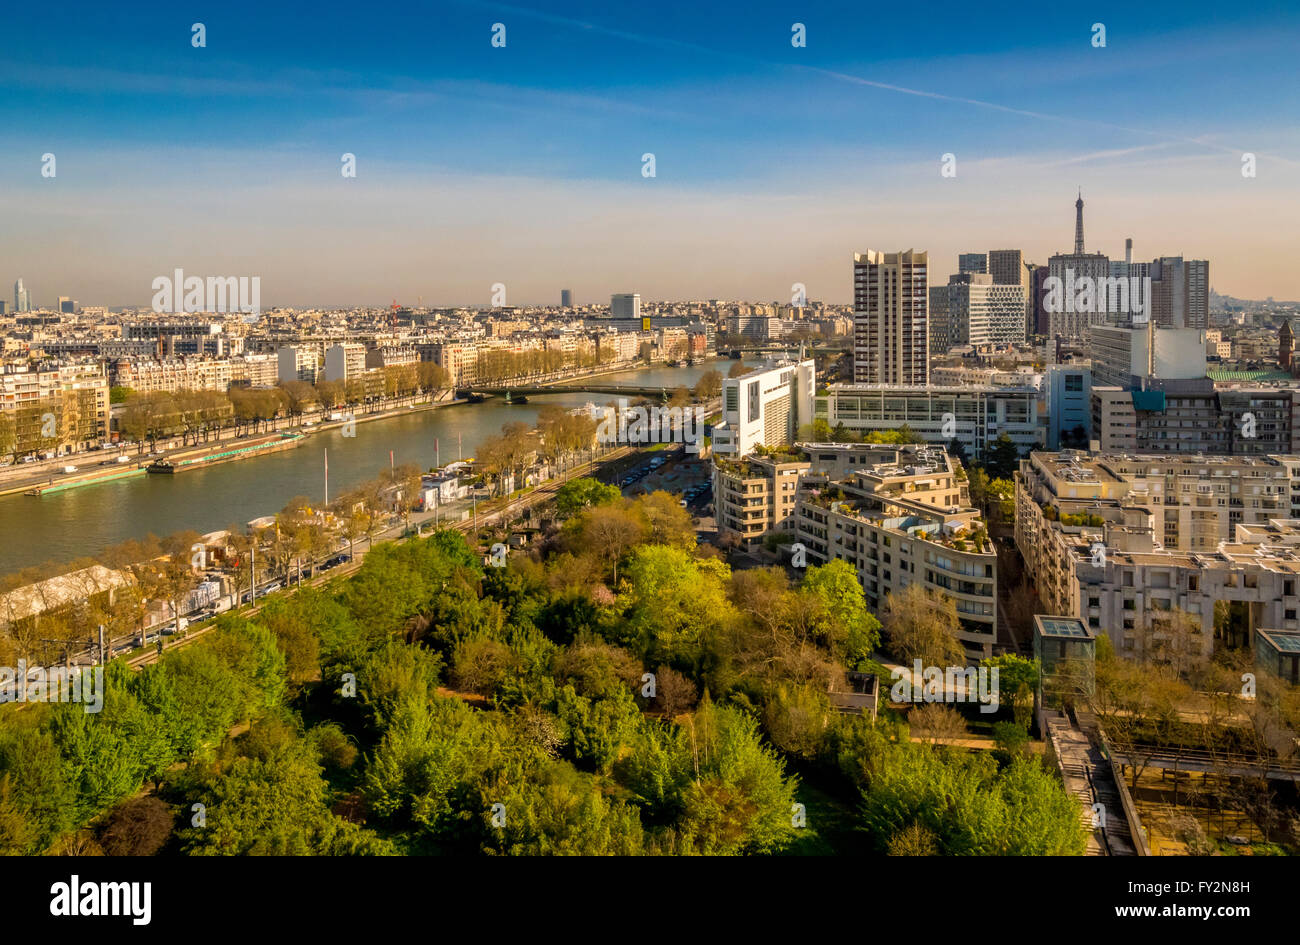 Vue aérienne de la Seine avec la Tour Eiffel en distance, Paris, France. Banque D'Images